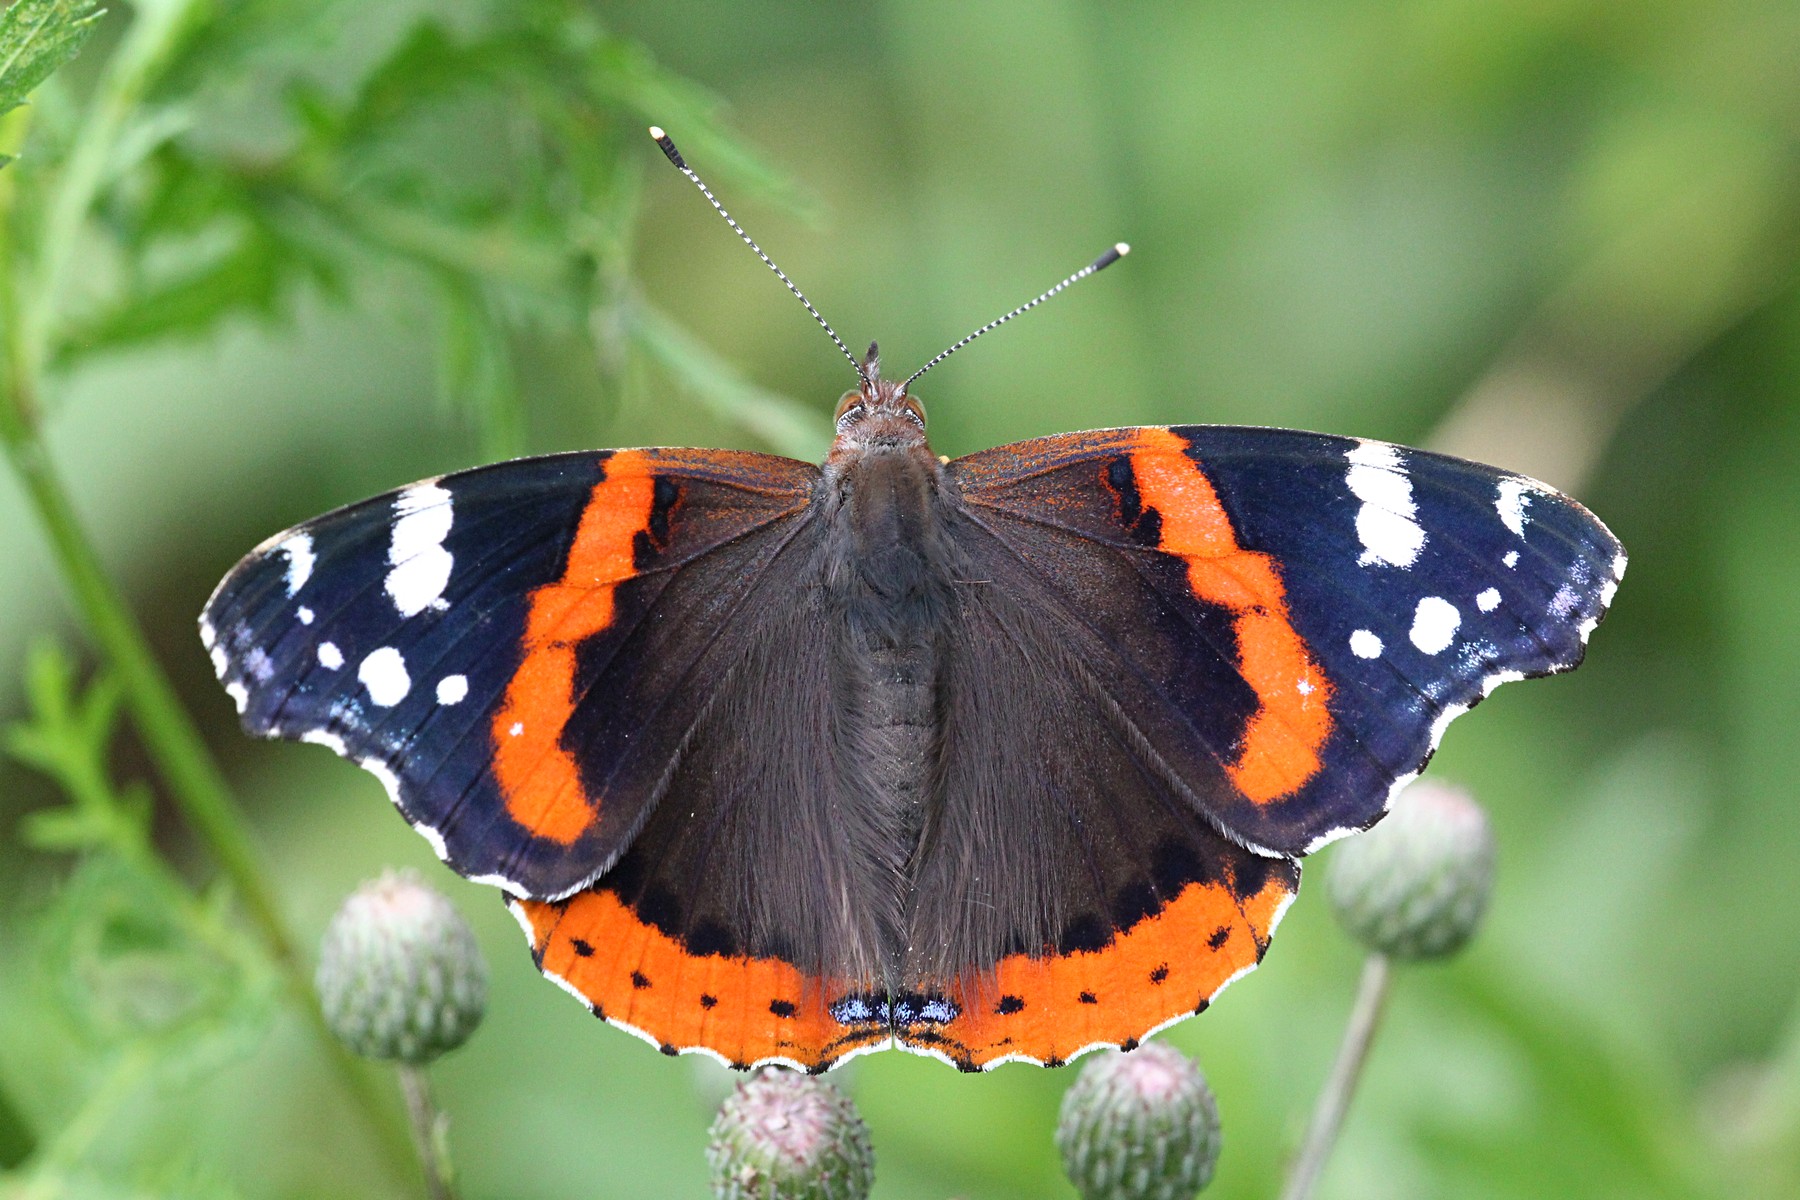 Адмирал - крупная бабочка с тёмными крыльями с оранжево-красной полосой и  белыми пятнами - Михаил Соколов